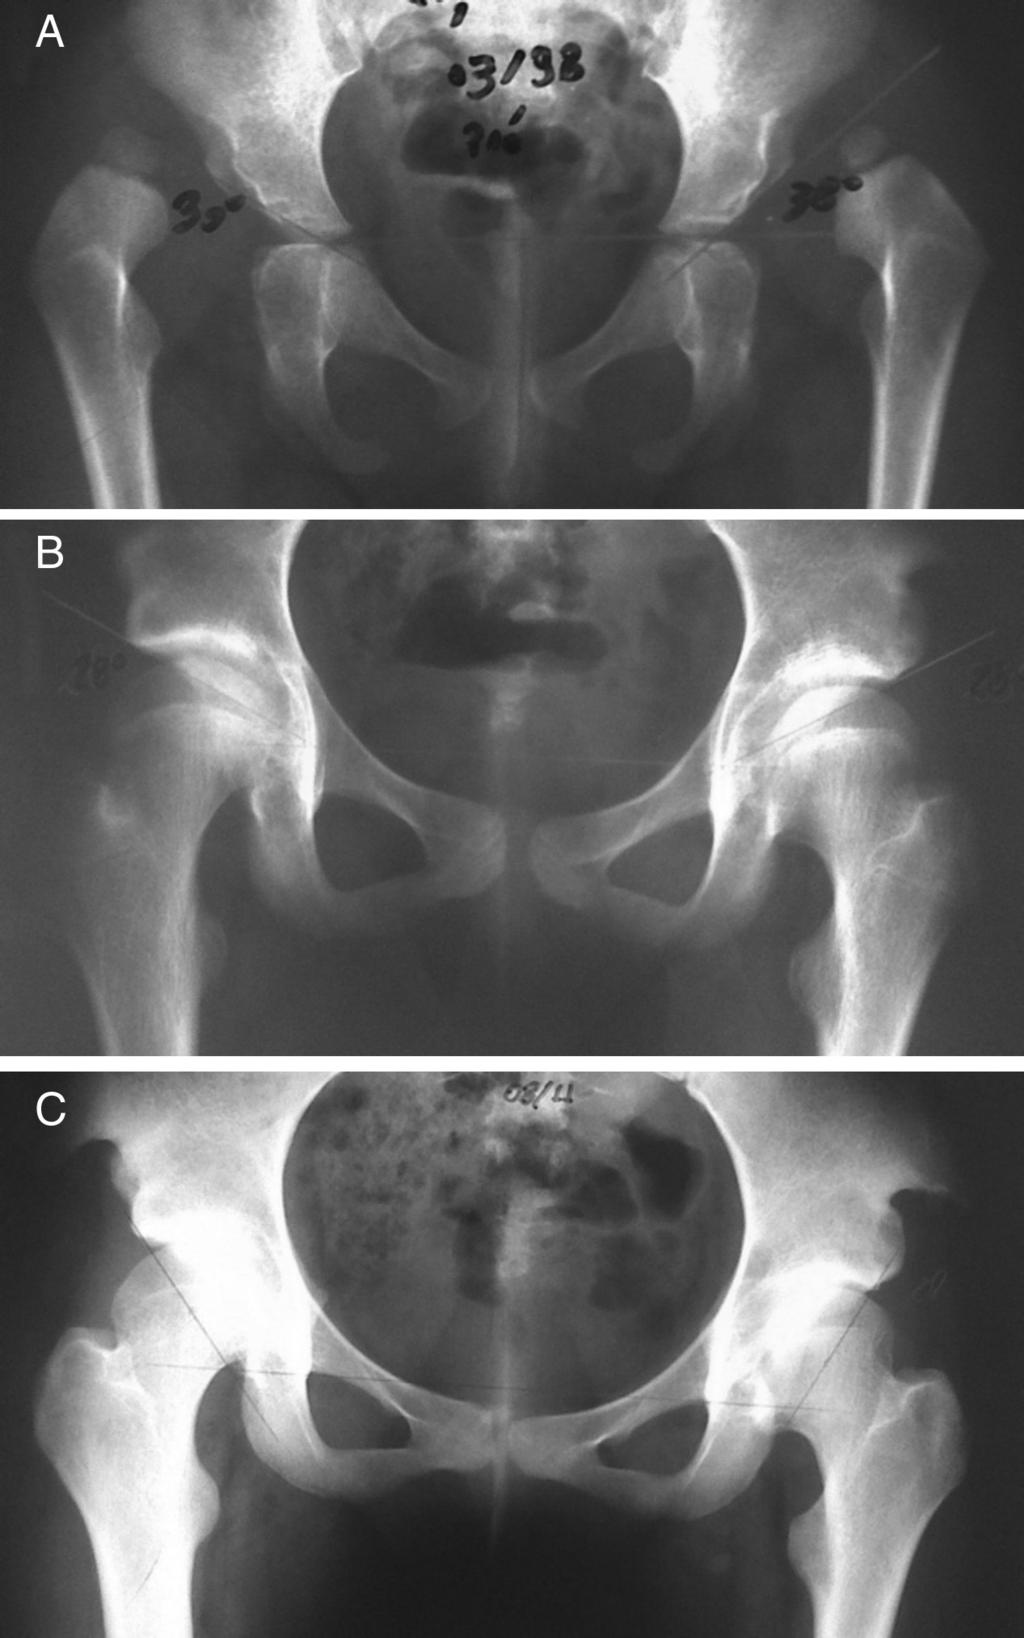 (C) Rx de 10/2011, pós-operatório tardio de sete anos do quadril direito e seis anos e nove meses do quadril esquerdo, que apresenta necrose tipo 4 da cabeça femoral.